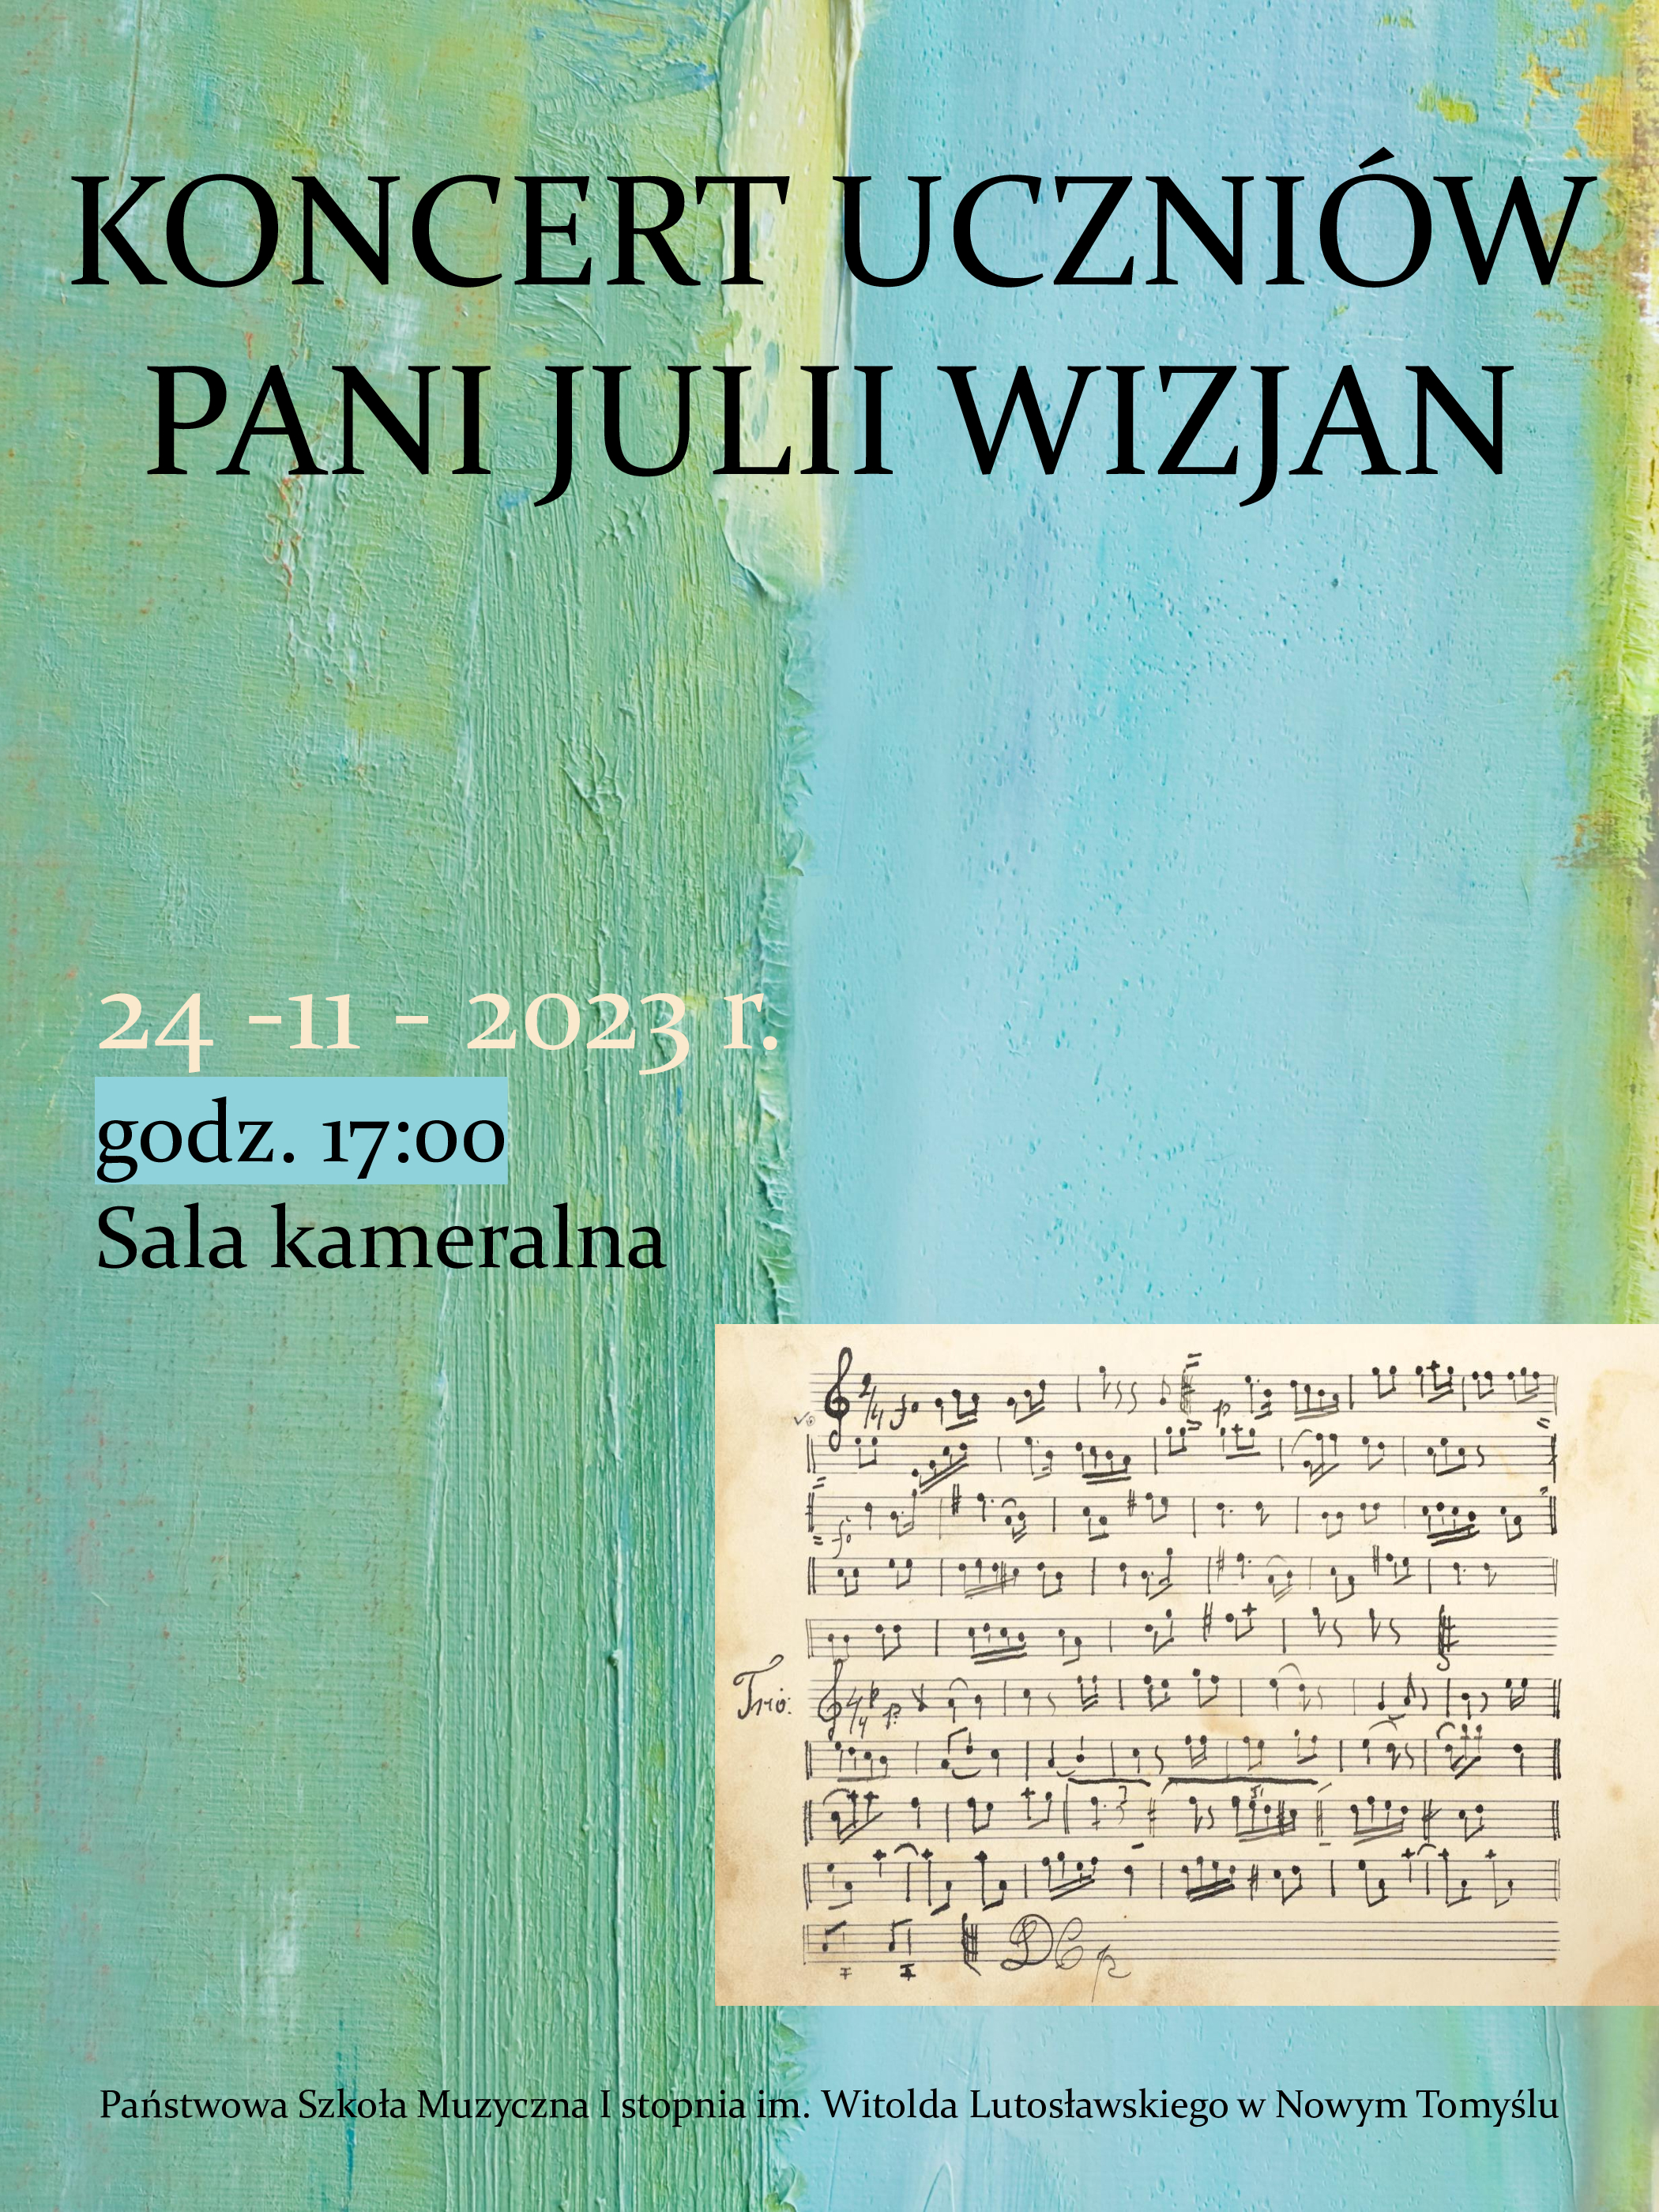 Plakat - Koncert uczniów p. Julii Wizjan